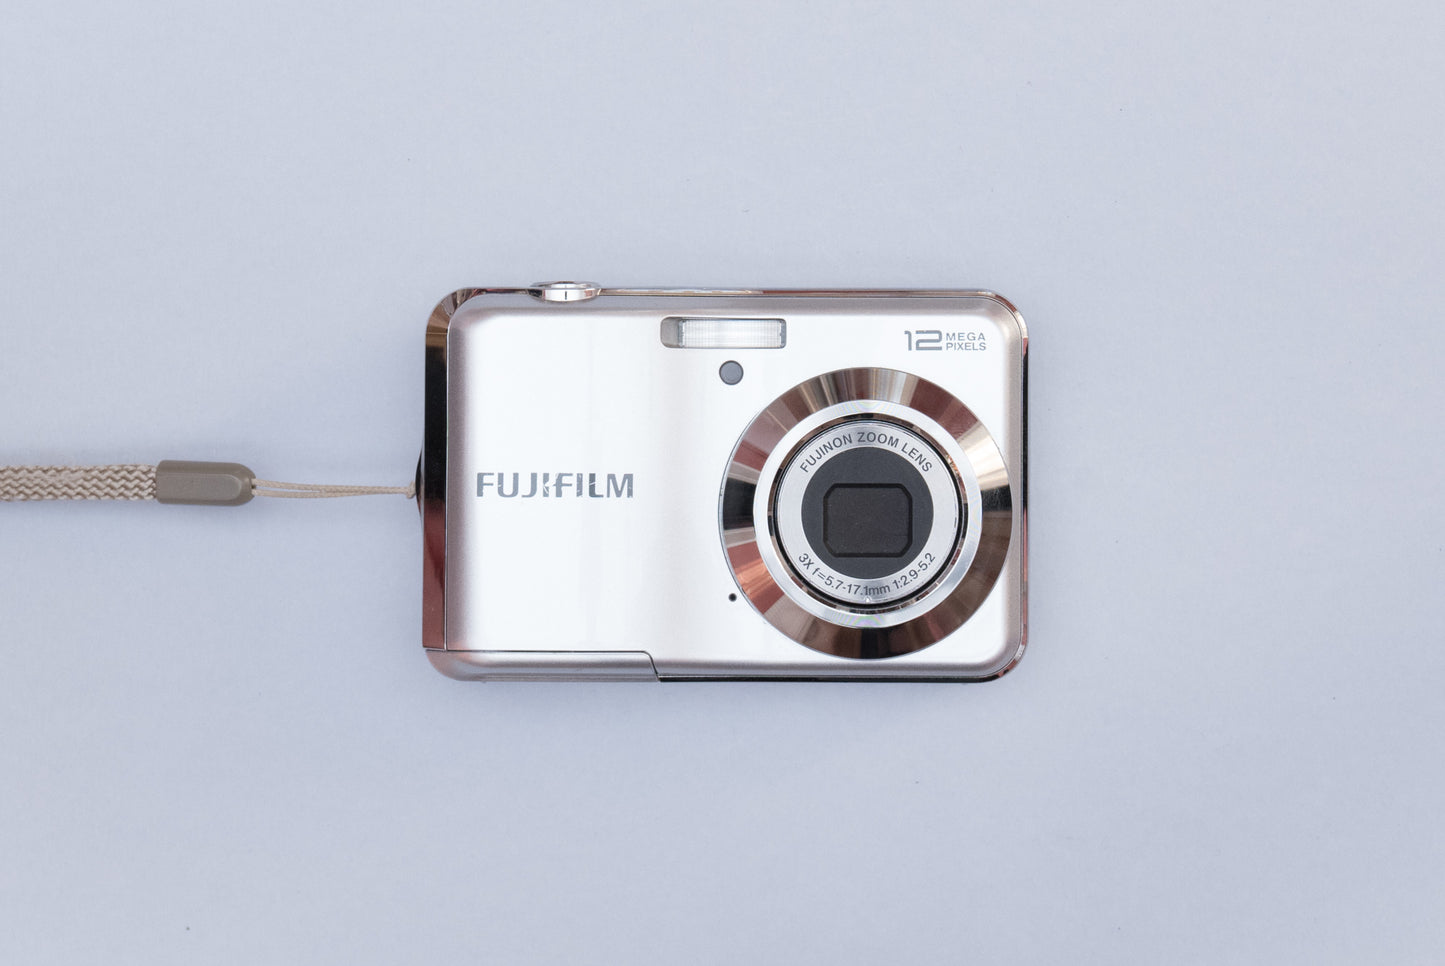 Fujifilm FinePix AV Compact Digital Camera